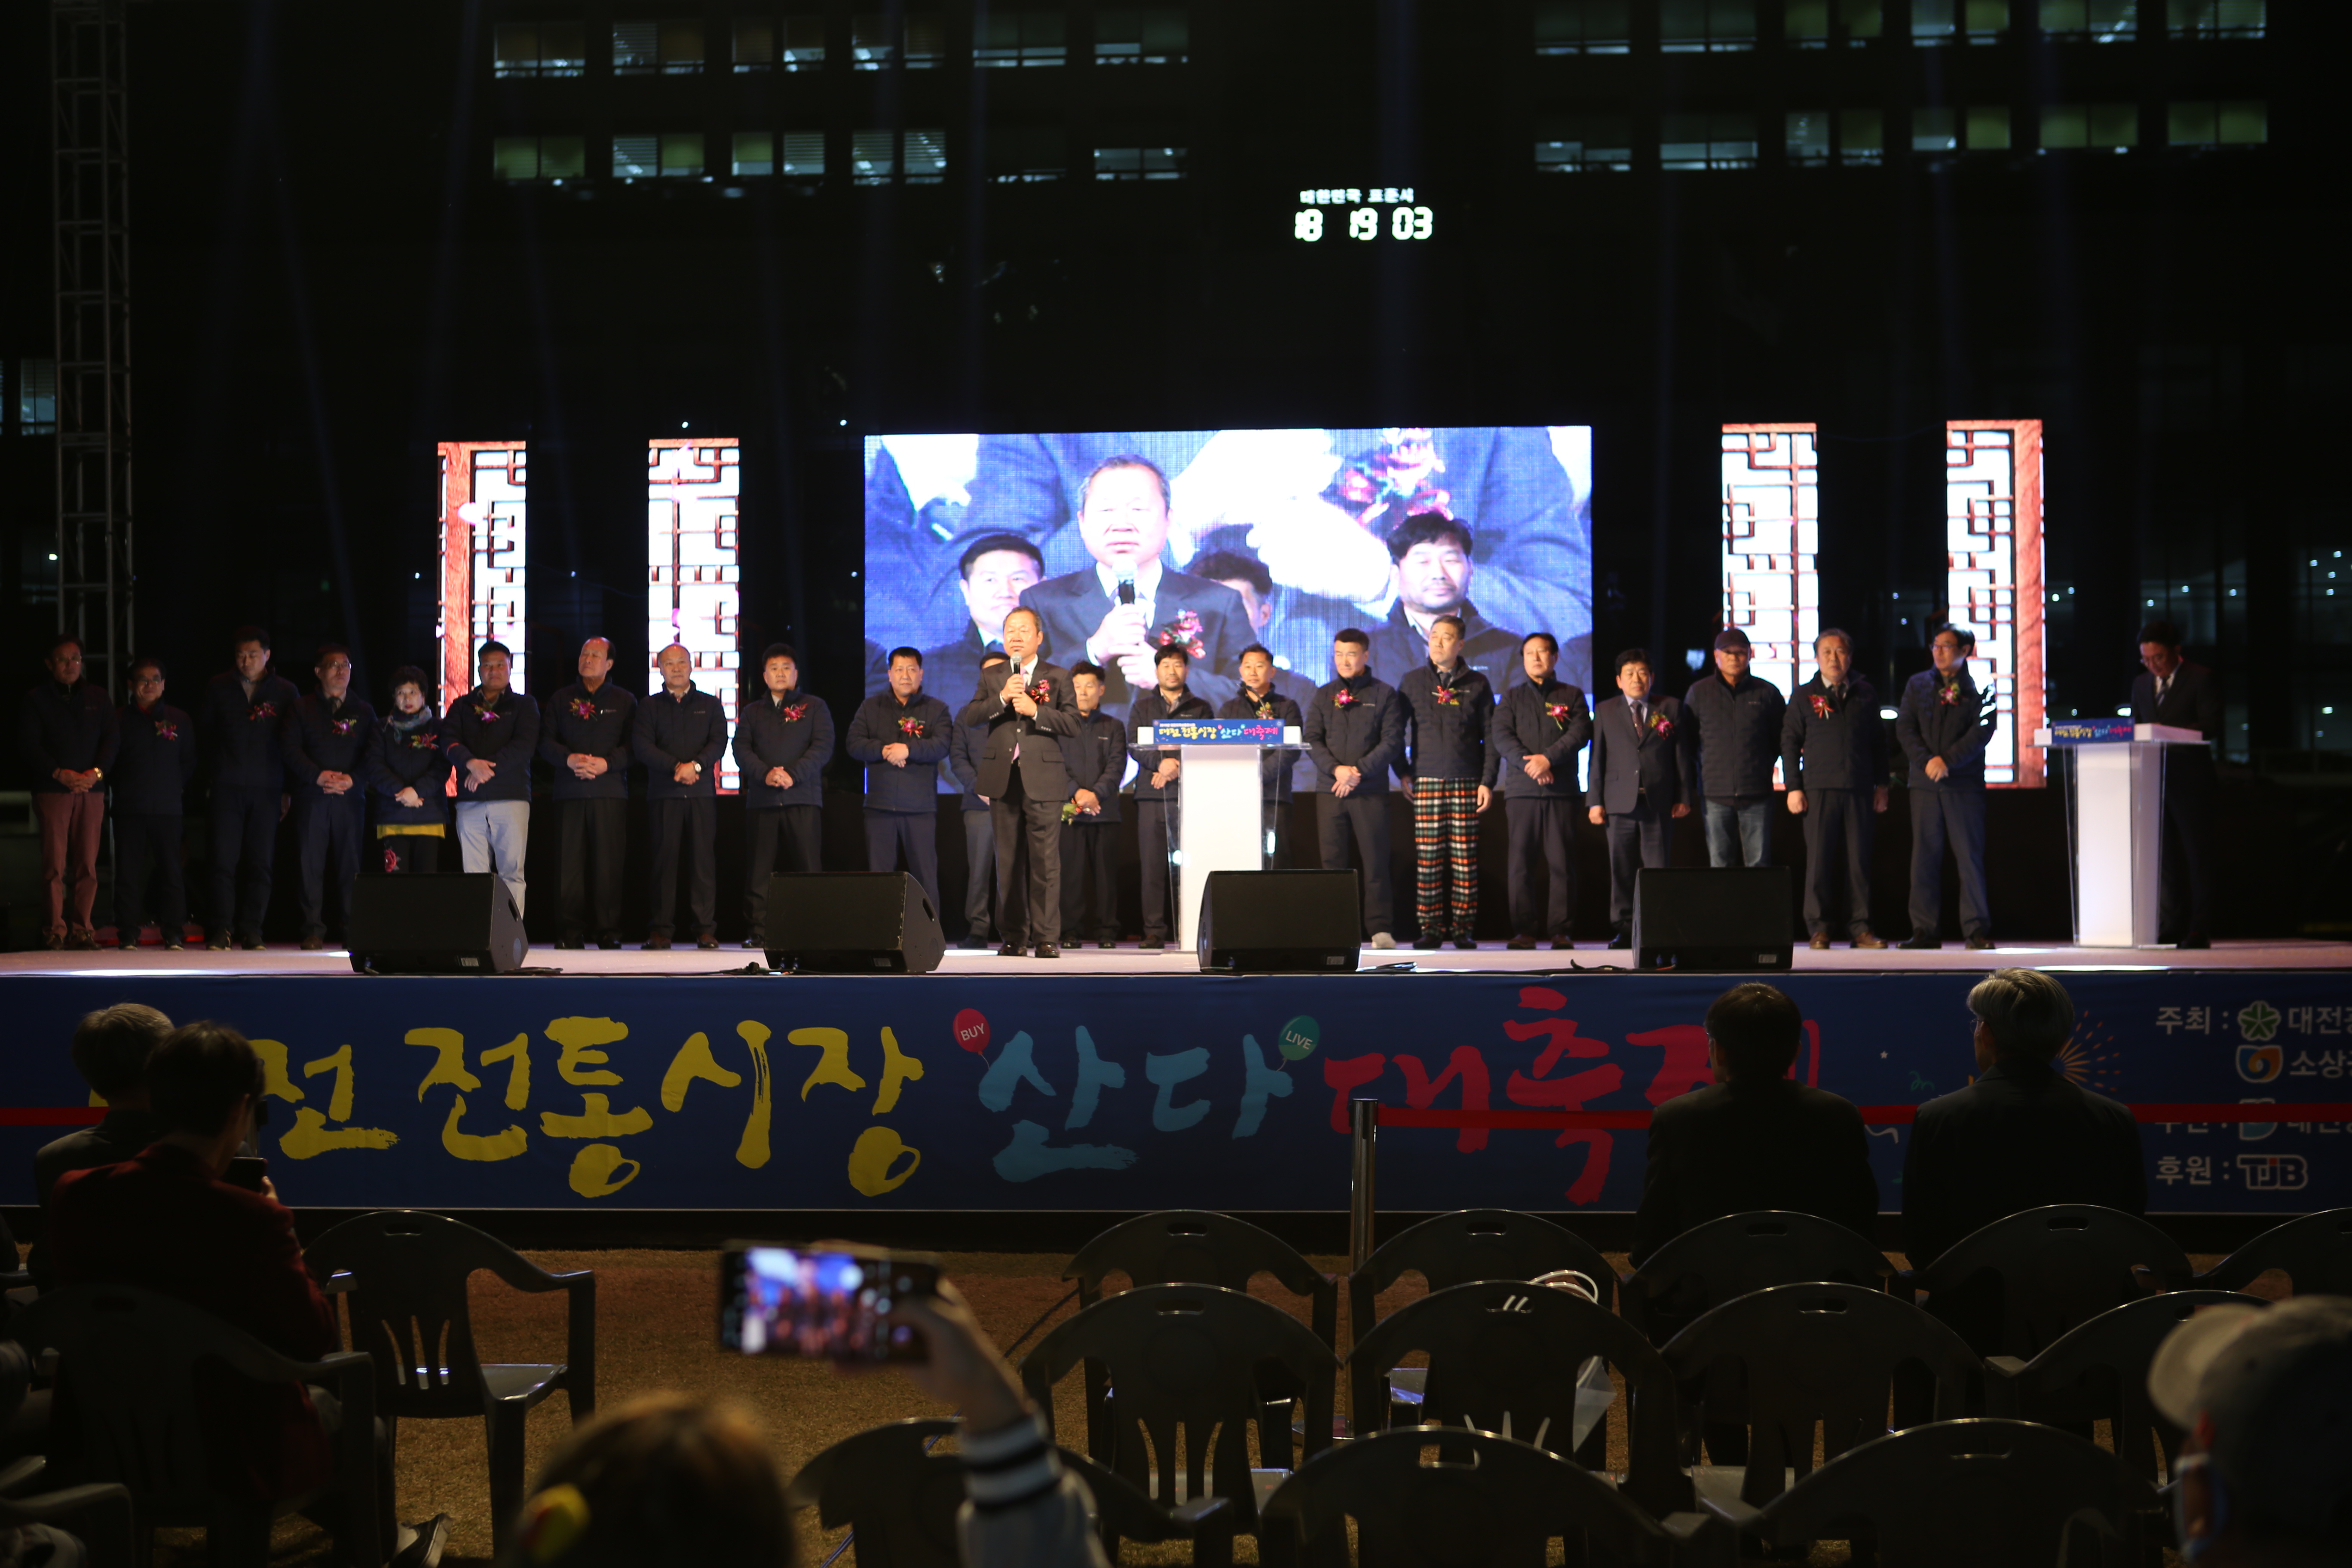 2019 대전지역상품전시회 "대전 전통시장 산다 대축제" - 개막식